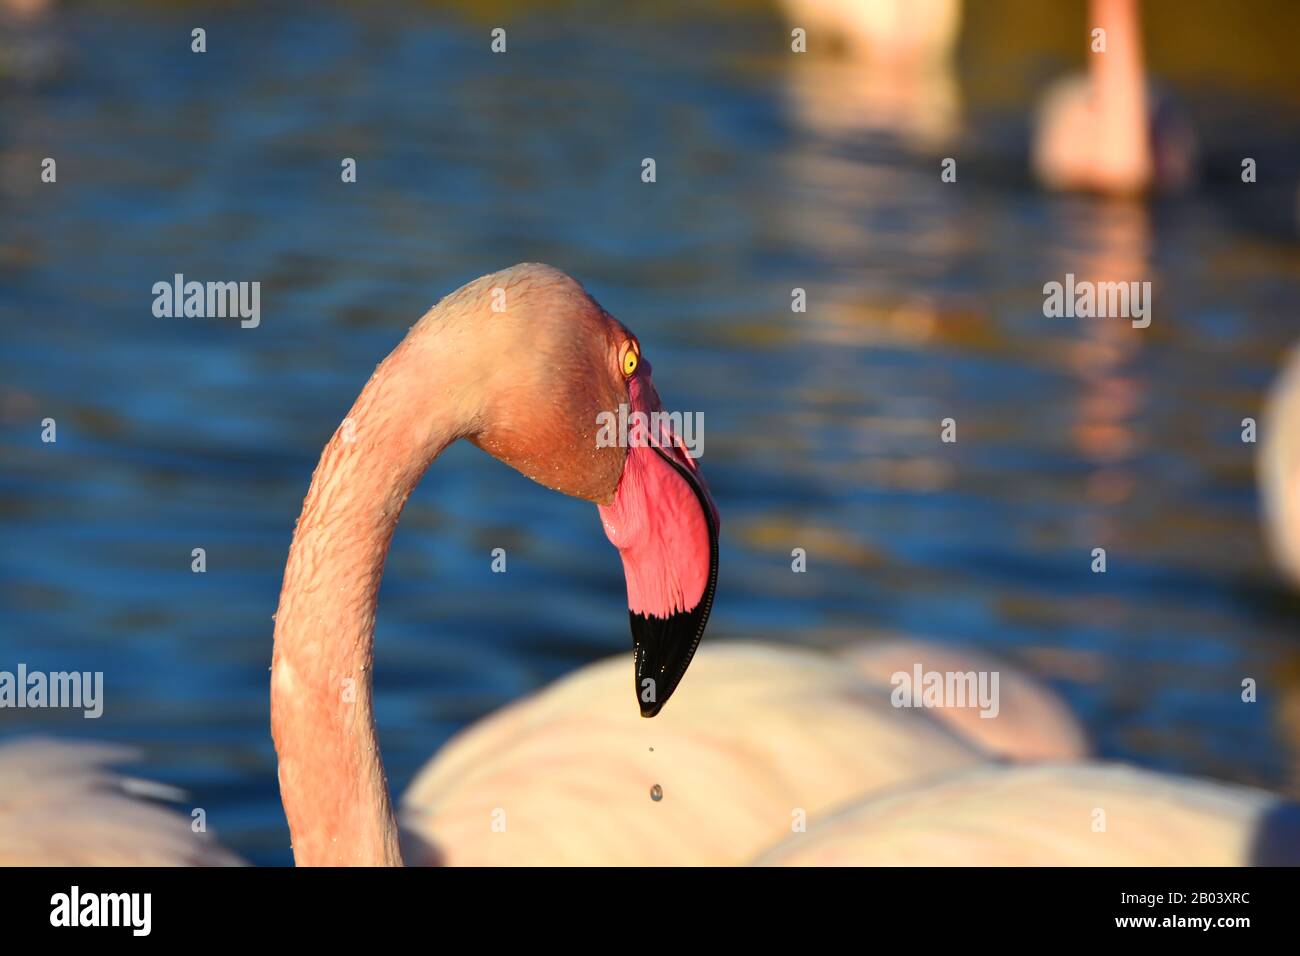 Tropfen Wasser, das aus dem Schnabel eines Flamingos tropft Stockfoto